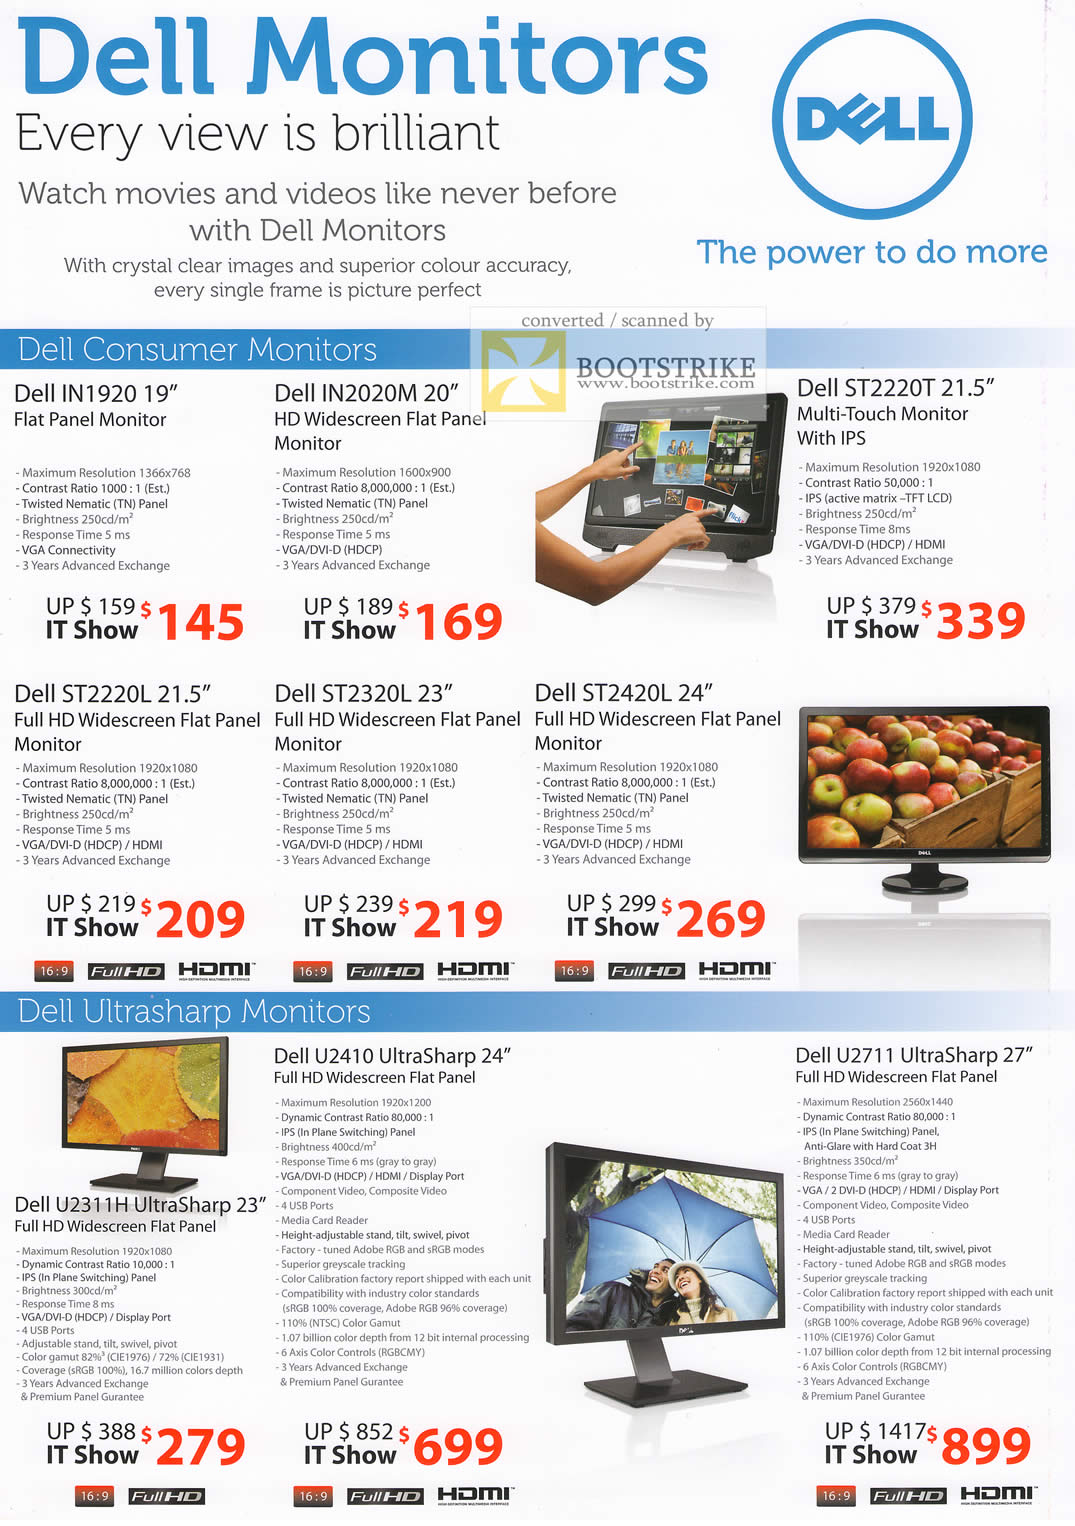 IT Show 2011 price list image brochure of Dell LCD Monitors IN1920 IN2020M ST2220T ST2220L ST2320L ST2420L Ultrasharp U2311H U2410 U2711